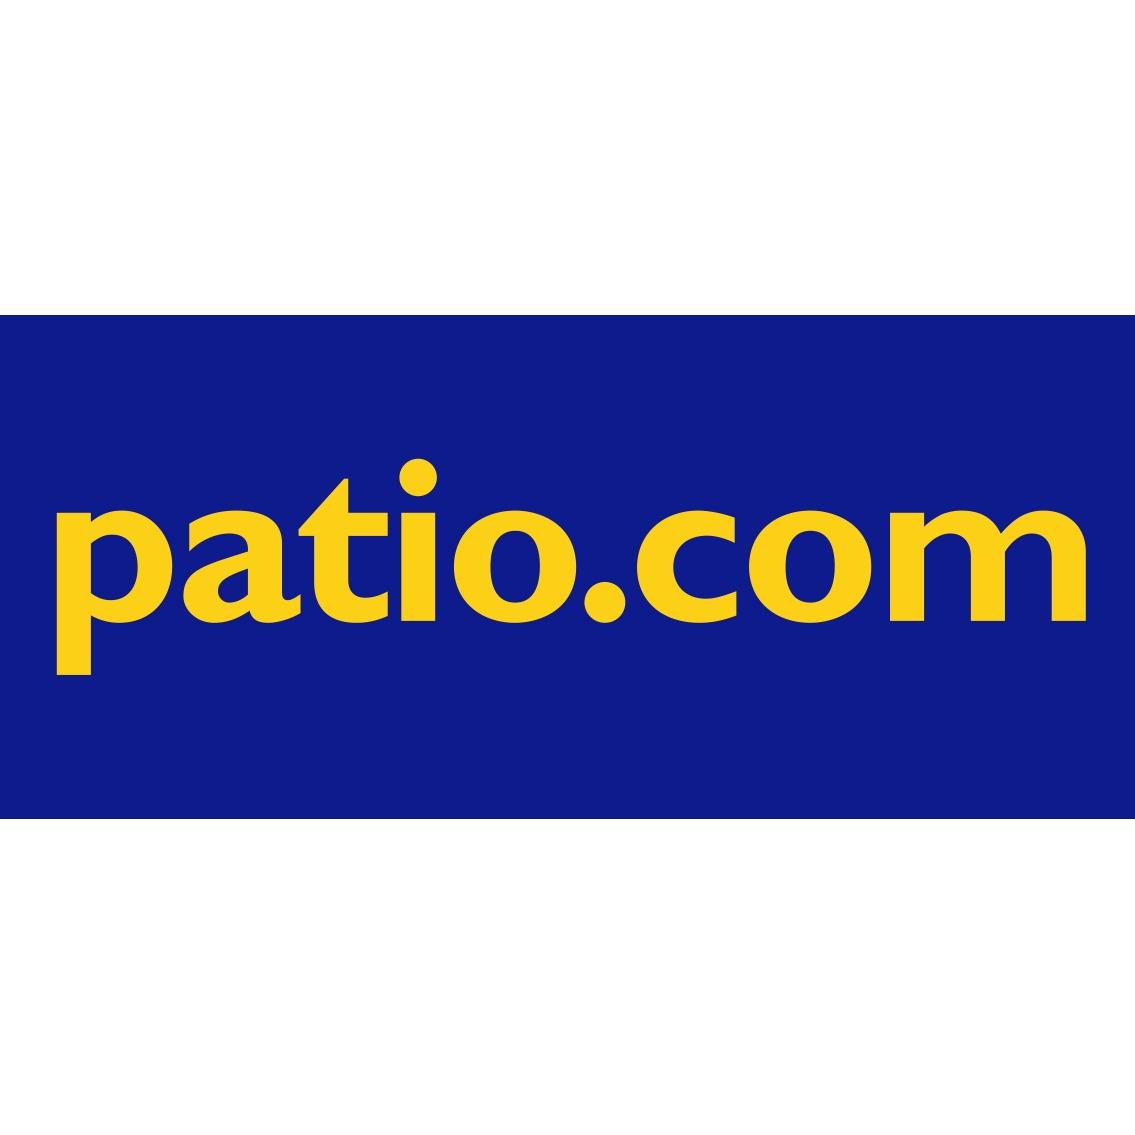 Patio.com Logo